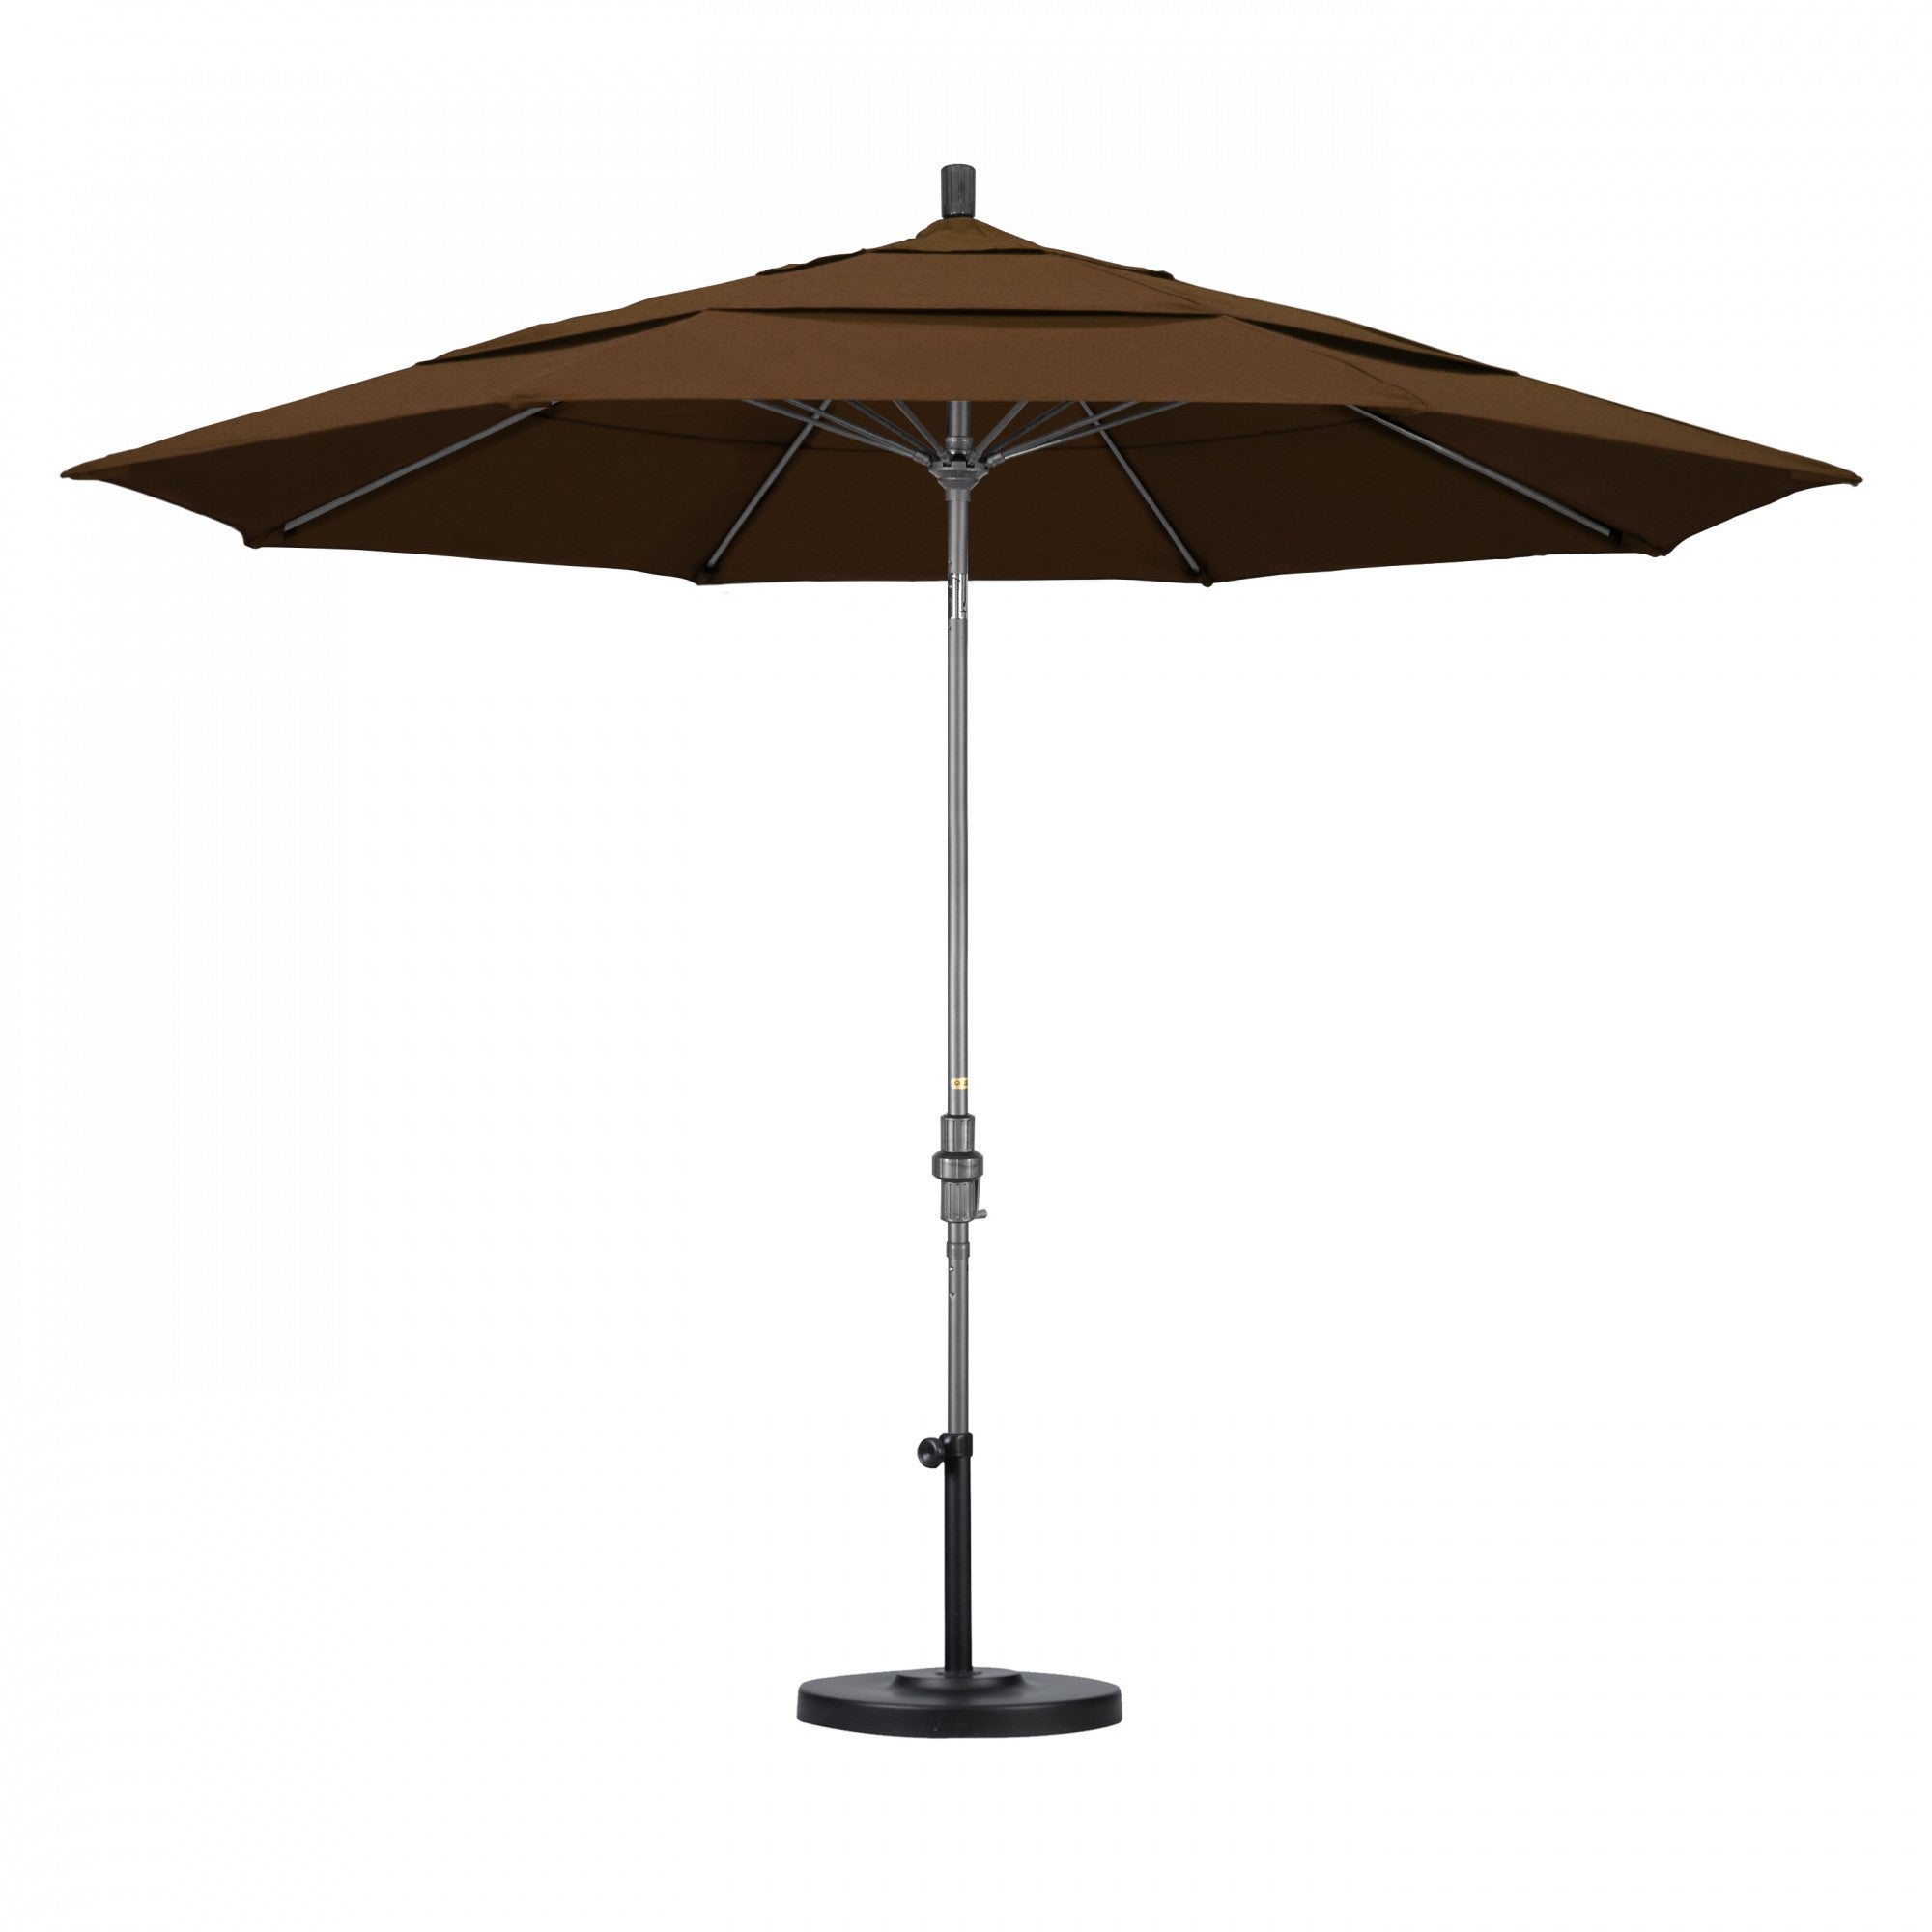 California Umbrella - 11' - Patio Umbrella Umbrella - Aluminum Pole - Teak - Olefin - GSCUF118010-F71-DWV